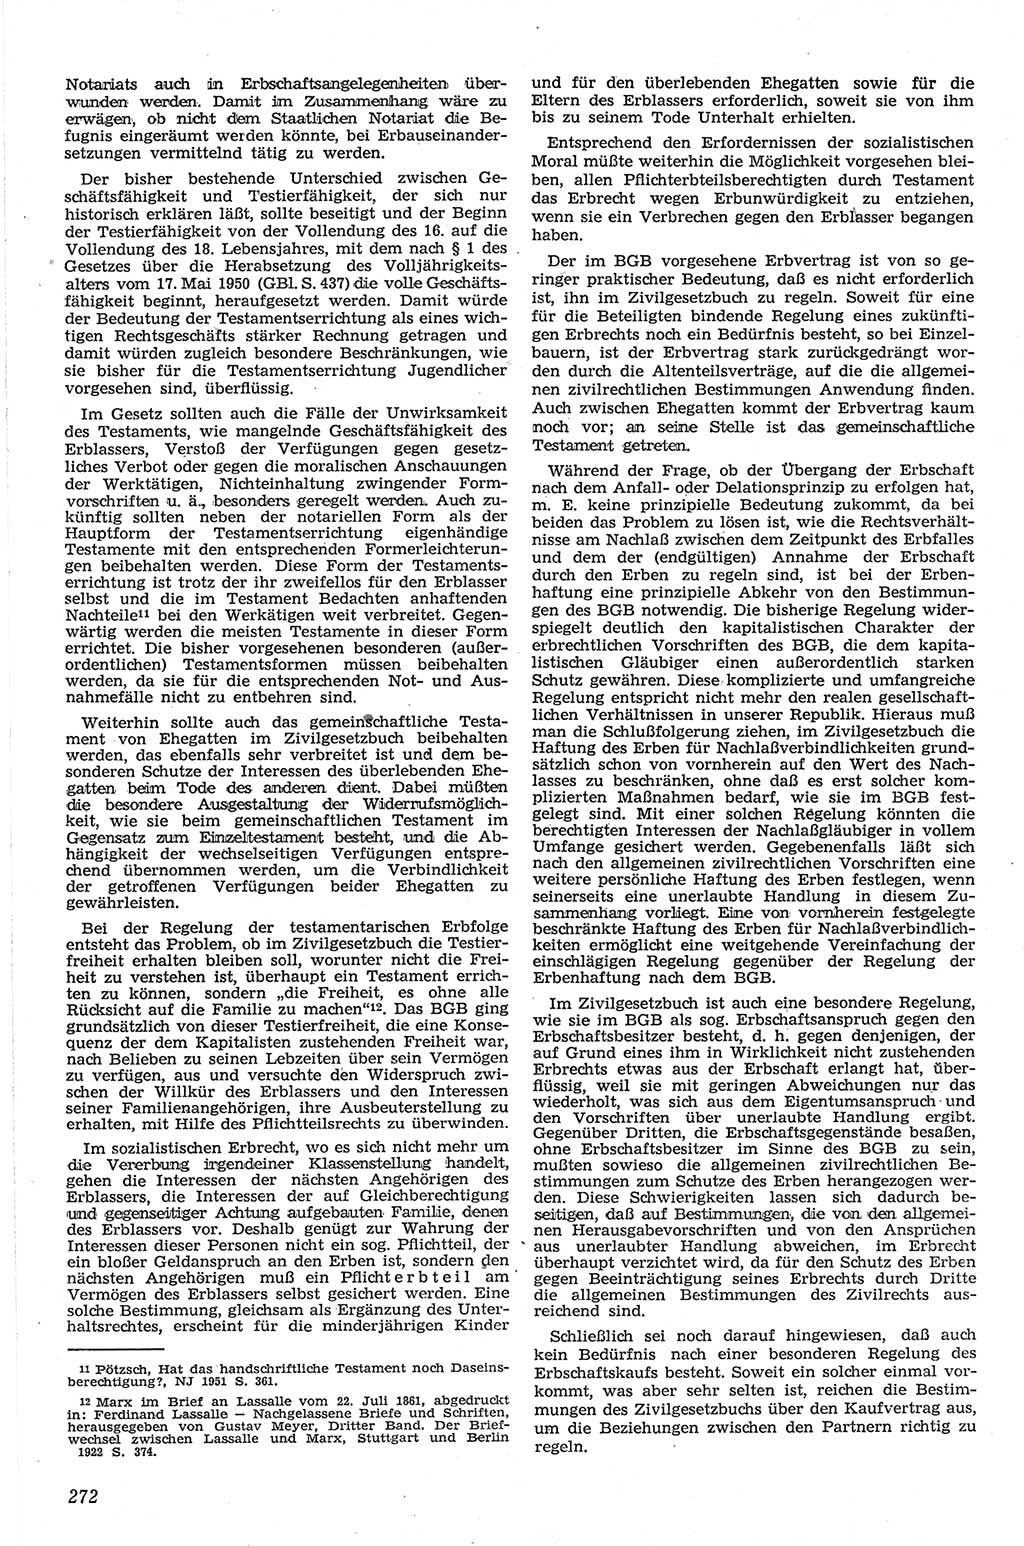 Neue Justiz (NJ), Zeitschrift für Recht und Rechtswissenschaft [Deutsche Demokratische Republik (DDR)], 13. Jahrgang 1959, Seite 272 (NJ DDR 1959, S. 272)